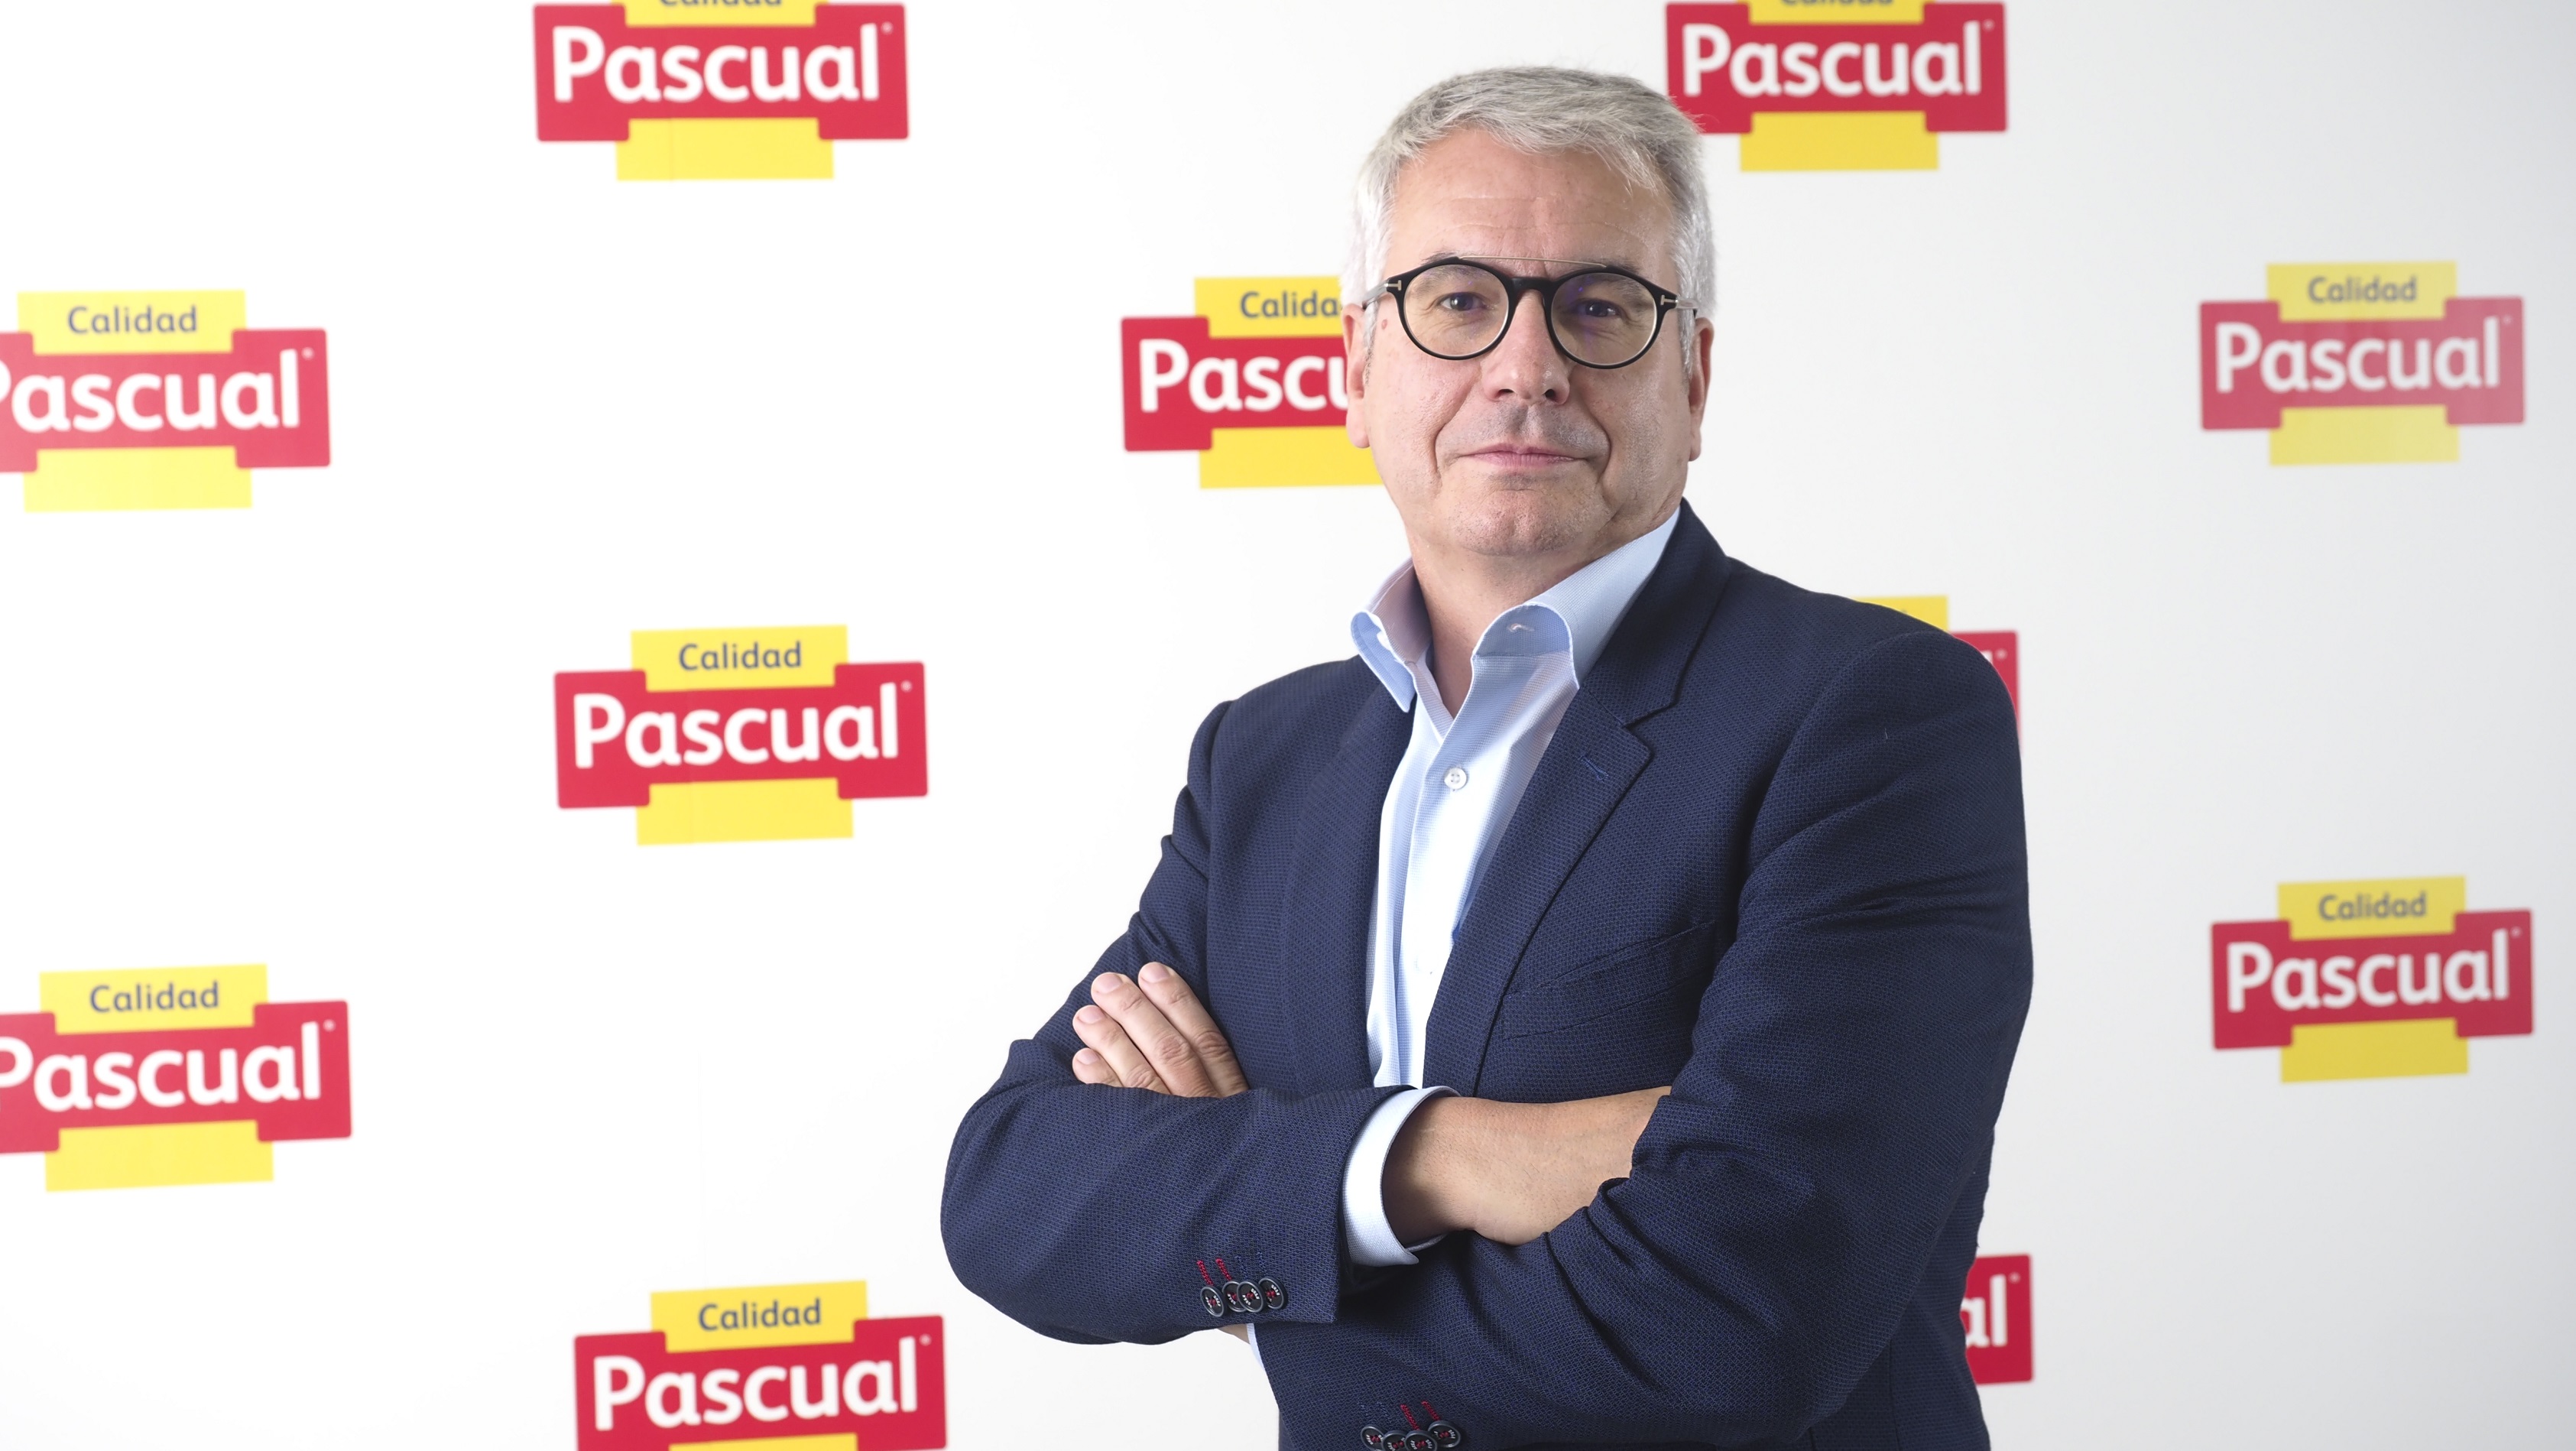 Pascual reestructura sus líneas de negocio tras la salida de José Luis Saiz